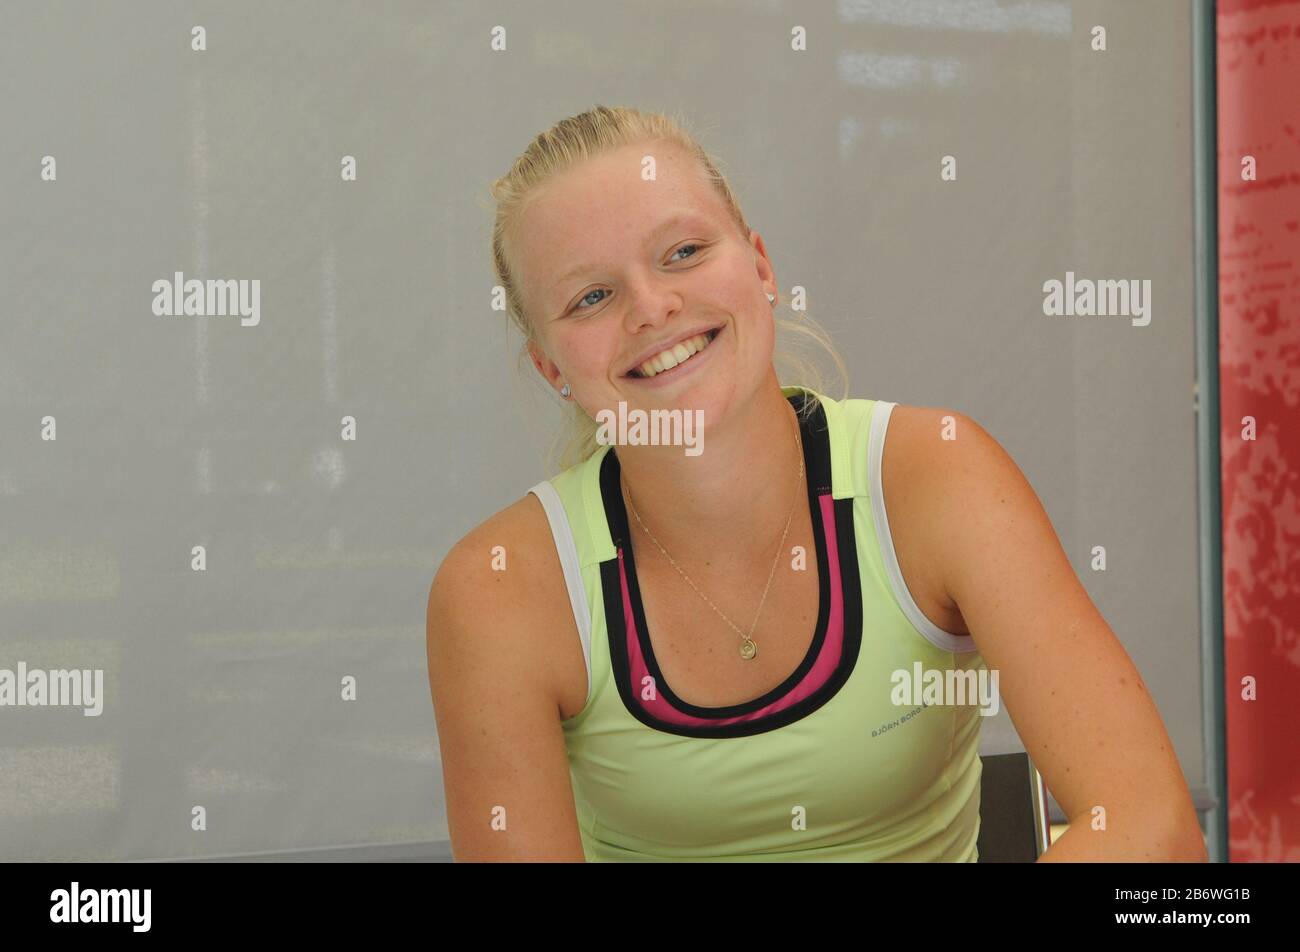 Joueur de tennis britannique, Harriet Dart à l'âge de 18 ans, pratique et fait face à la presse au National tennis Center, Roehampton Banque D'Images